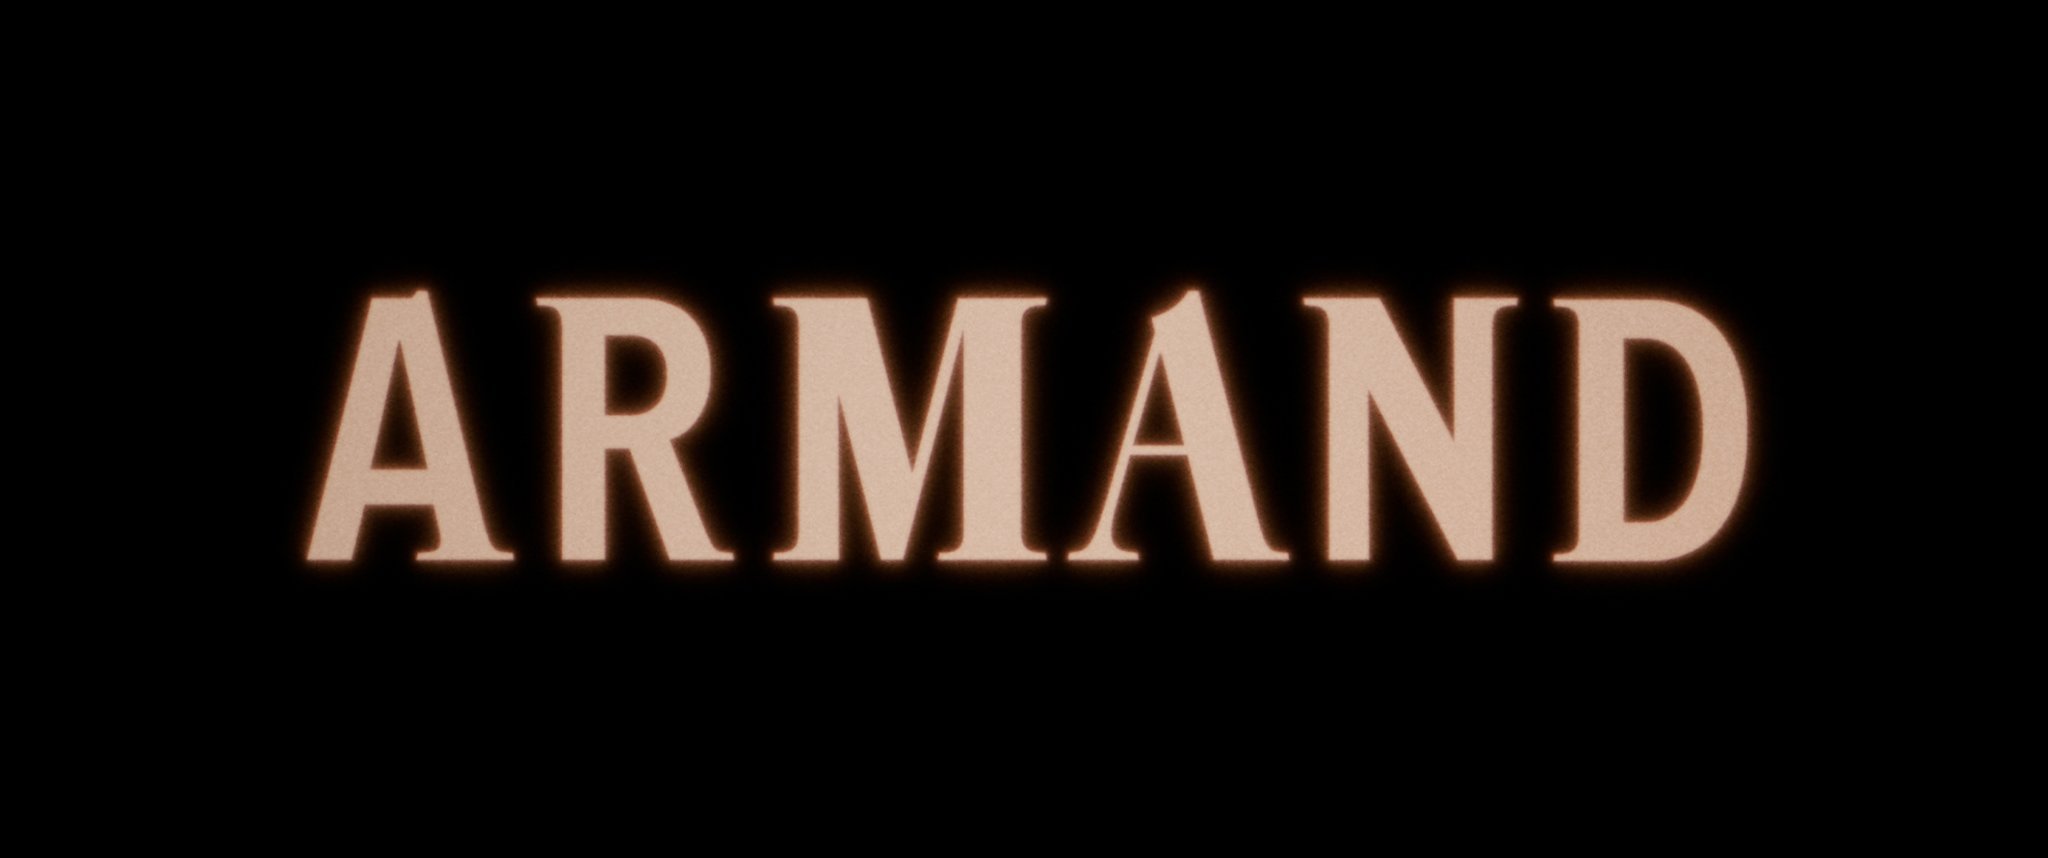 Armand Main Title Design